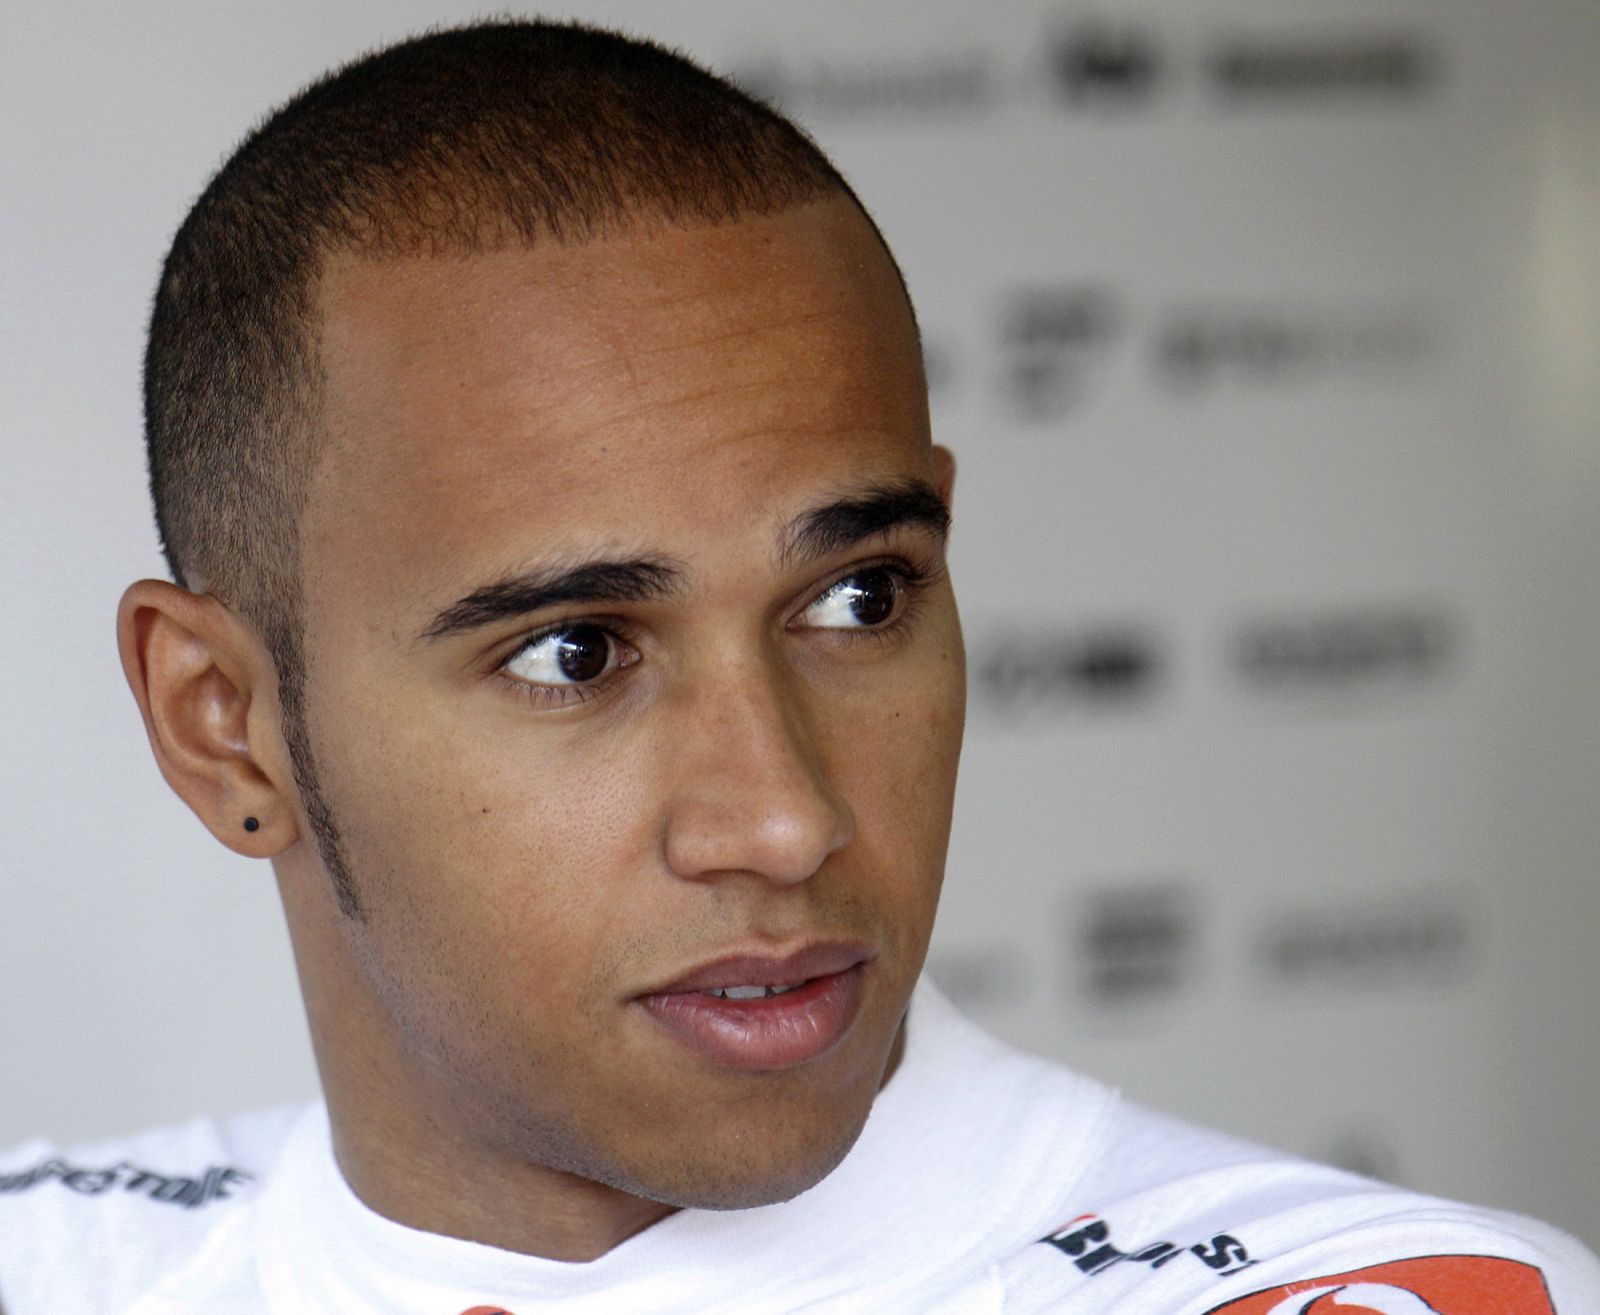 El piloto de McLaren en Formula 1, Lewis Hamilton, ha marcado el mejor tiempo en los últimos libres en Monza.